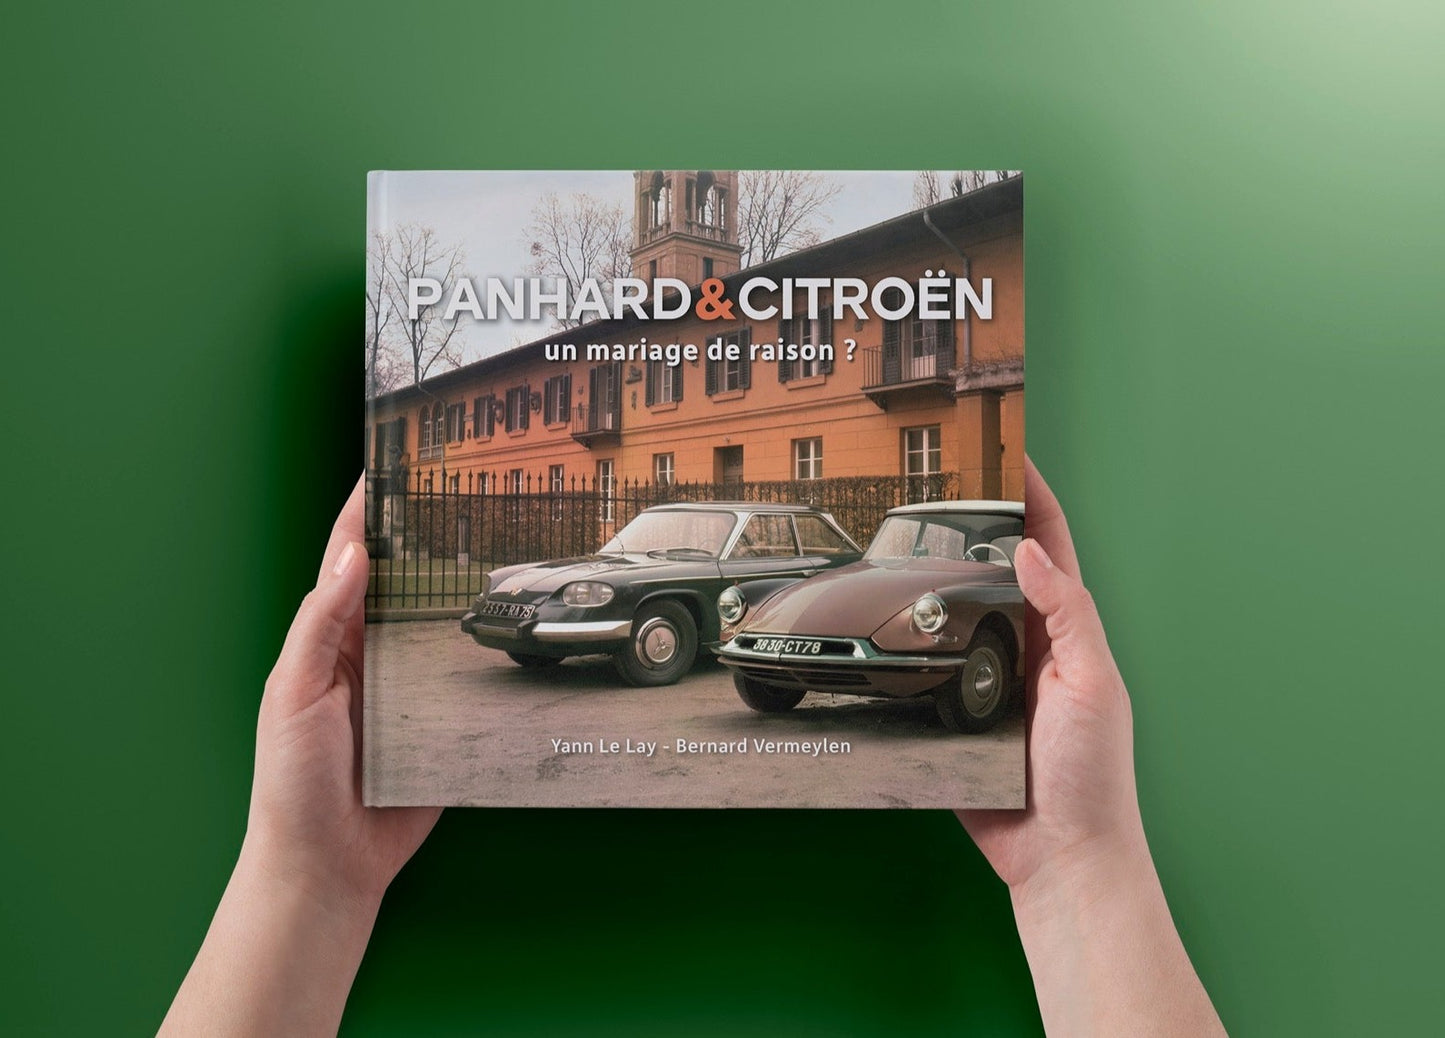 Panhard & Citroën - un mariage de raison?